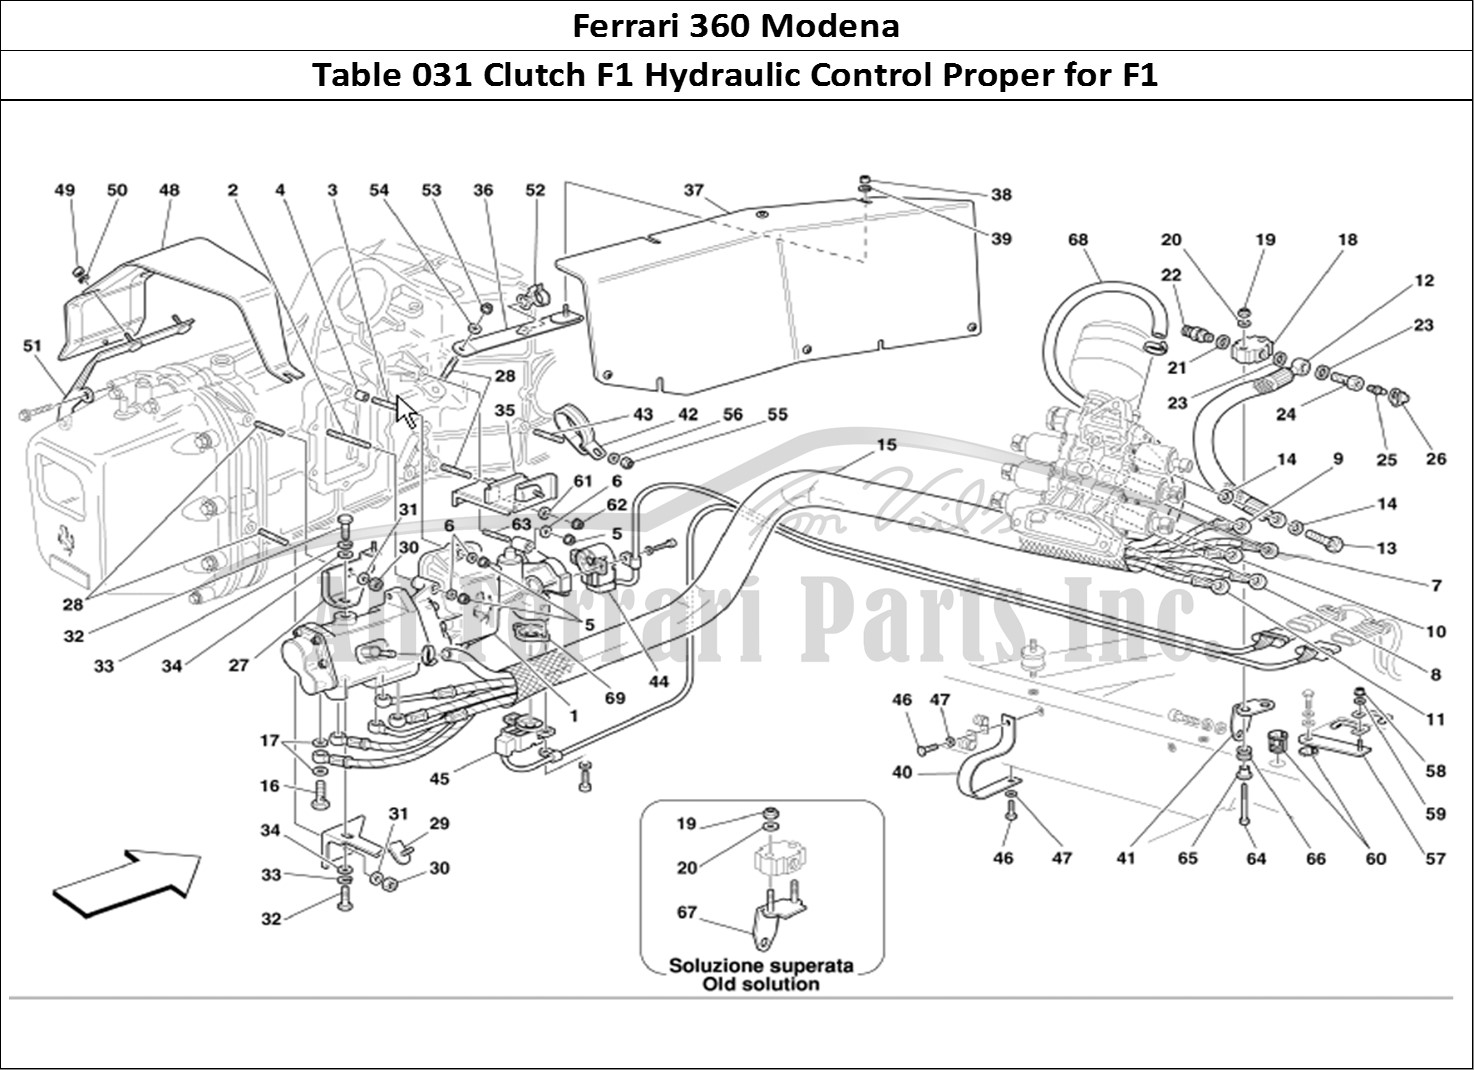 Buy Original Ferrari 360 Modena 031 Clutch F1 Hydraulic